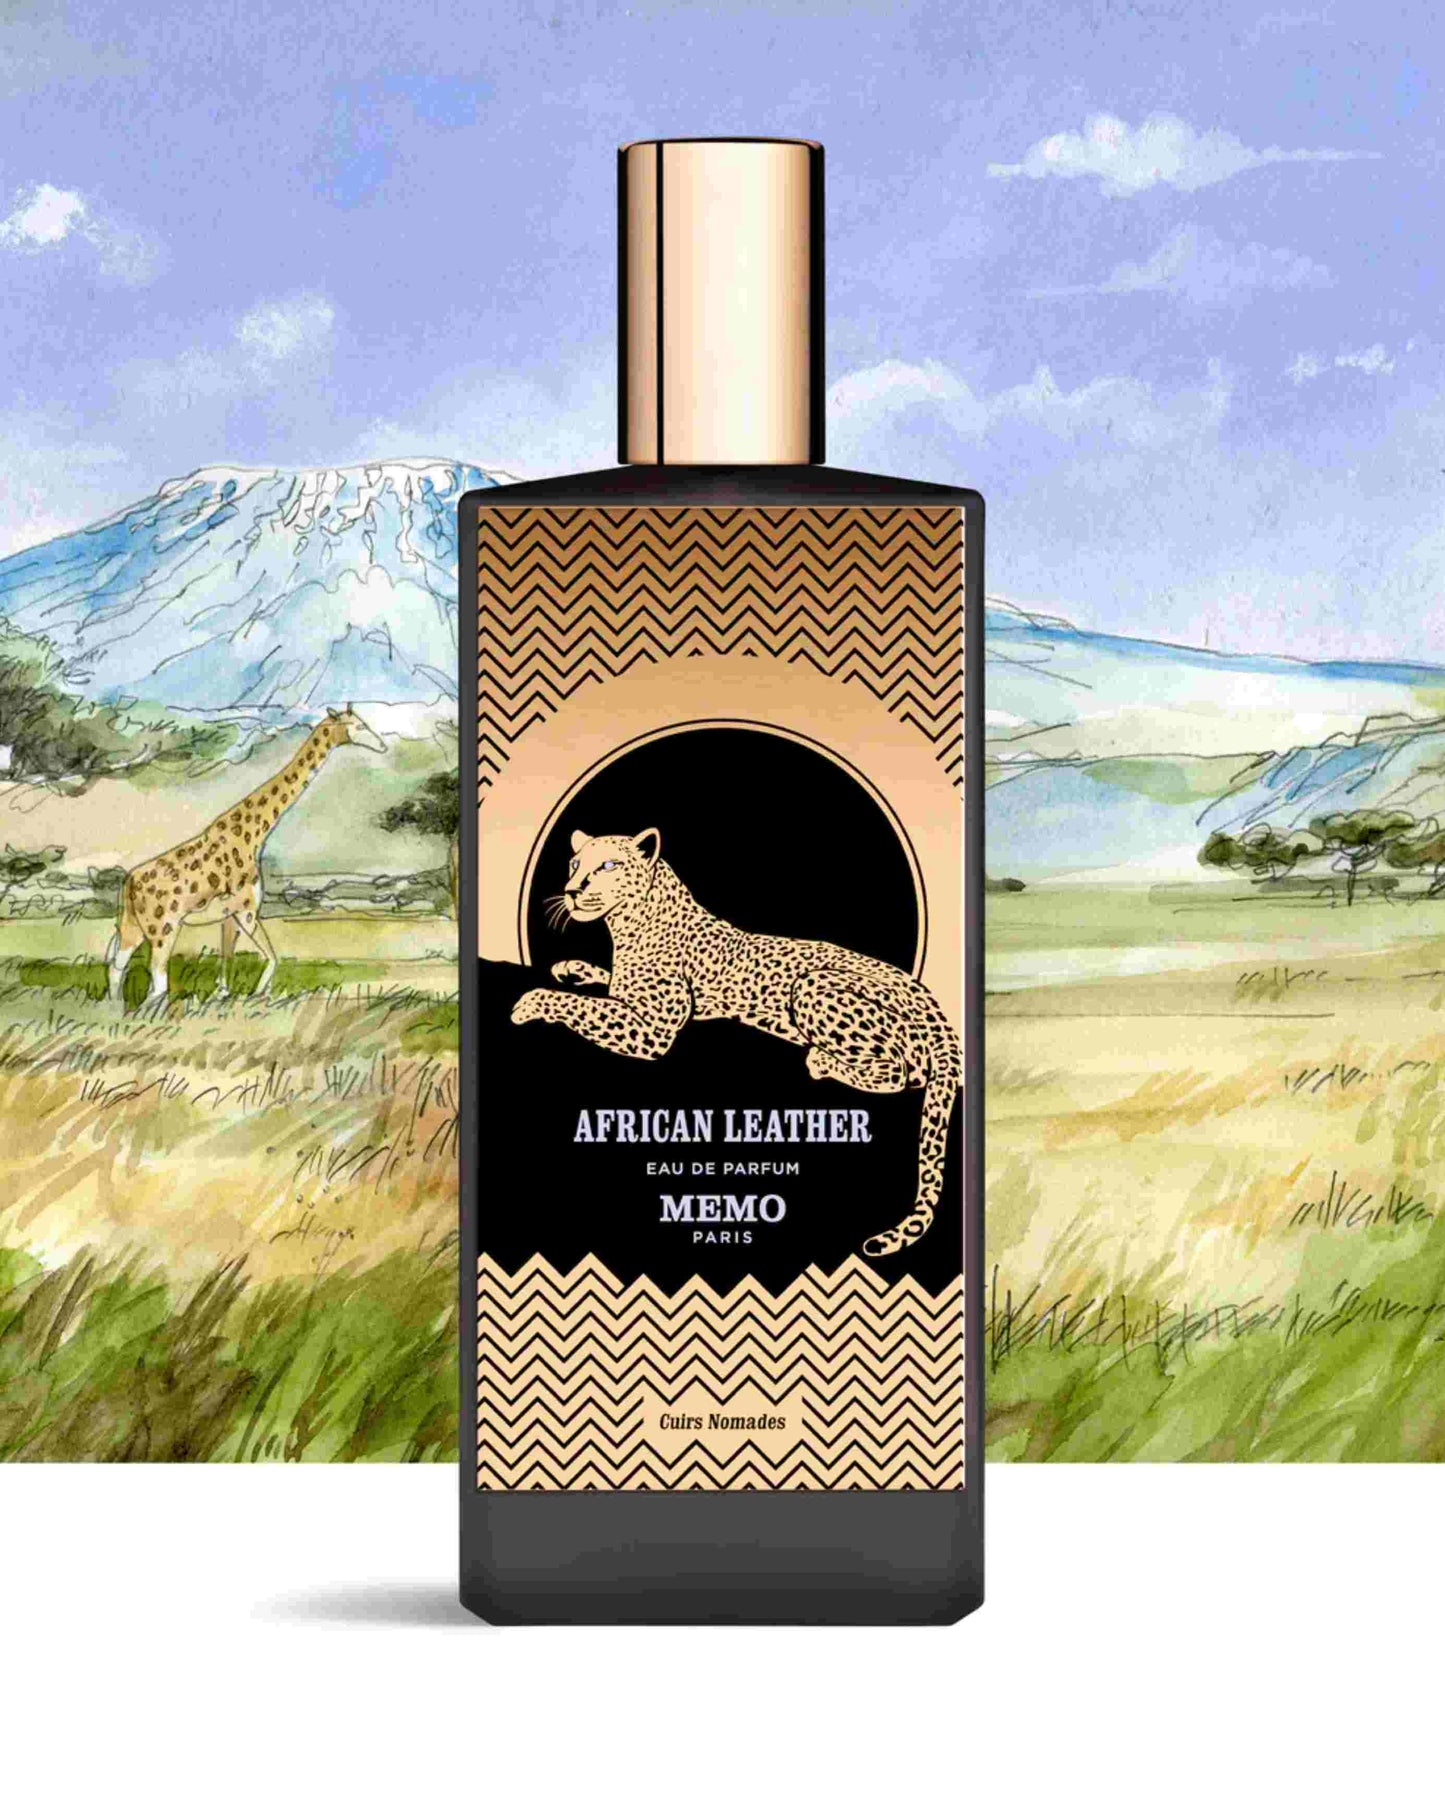 AFRICAN LEATHER – MEMO Paris Eau De Parfum–foryou–prix de foryou parfumurie en ligne–vente de parfum original au Maroc–prix de foryou parfum